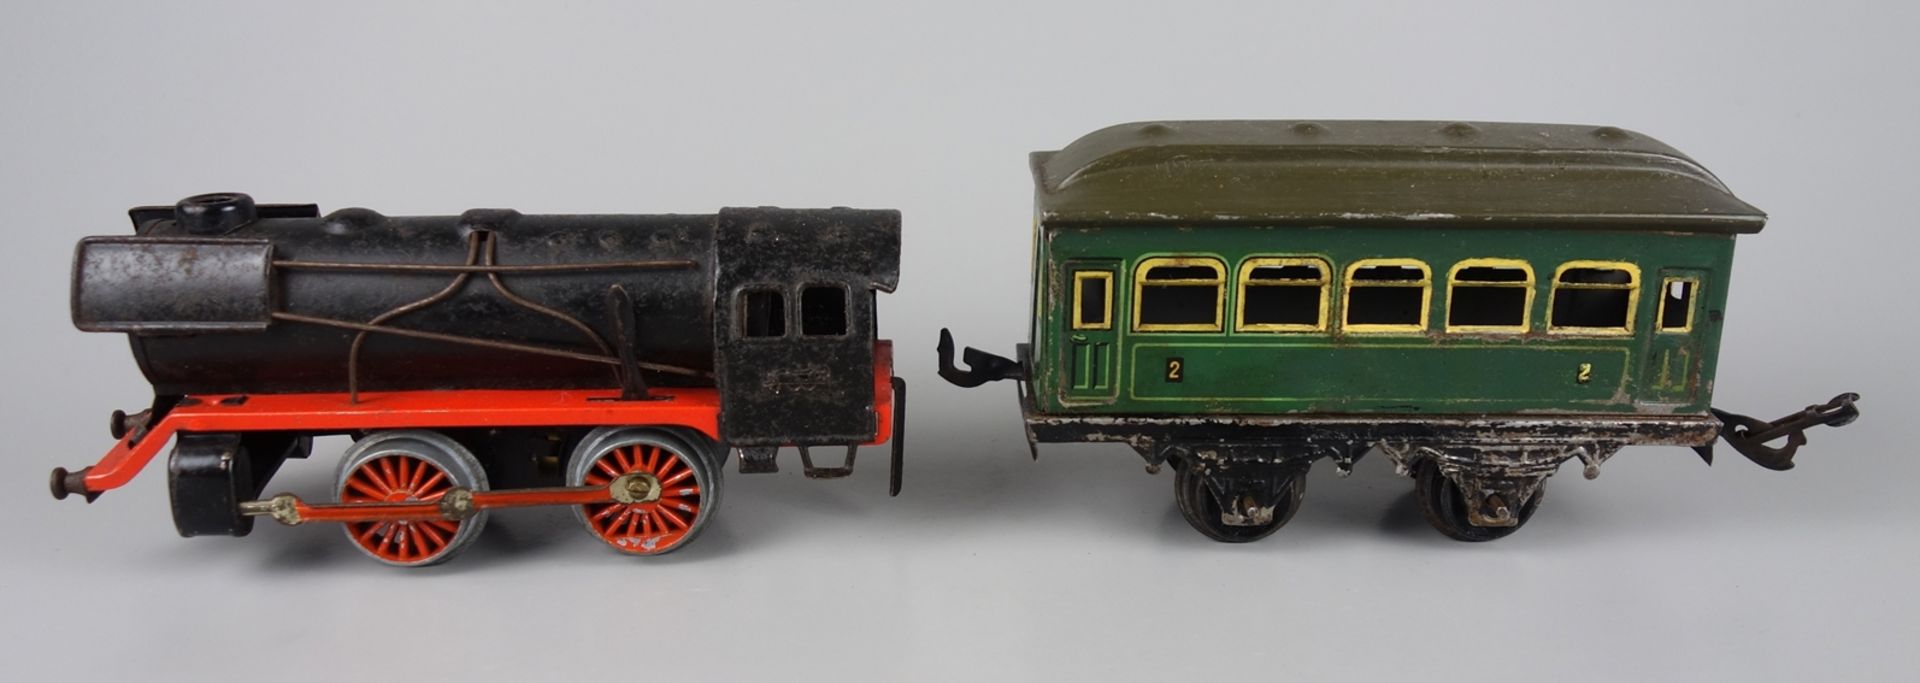 Dampflok und Personenwagen, 1* Bing, Spur 0 - Bild 2 aus 3